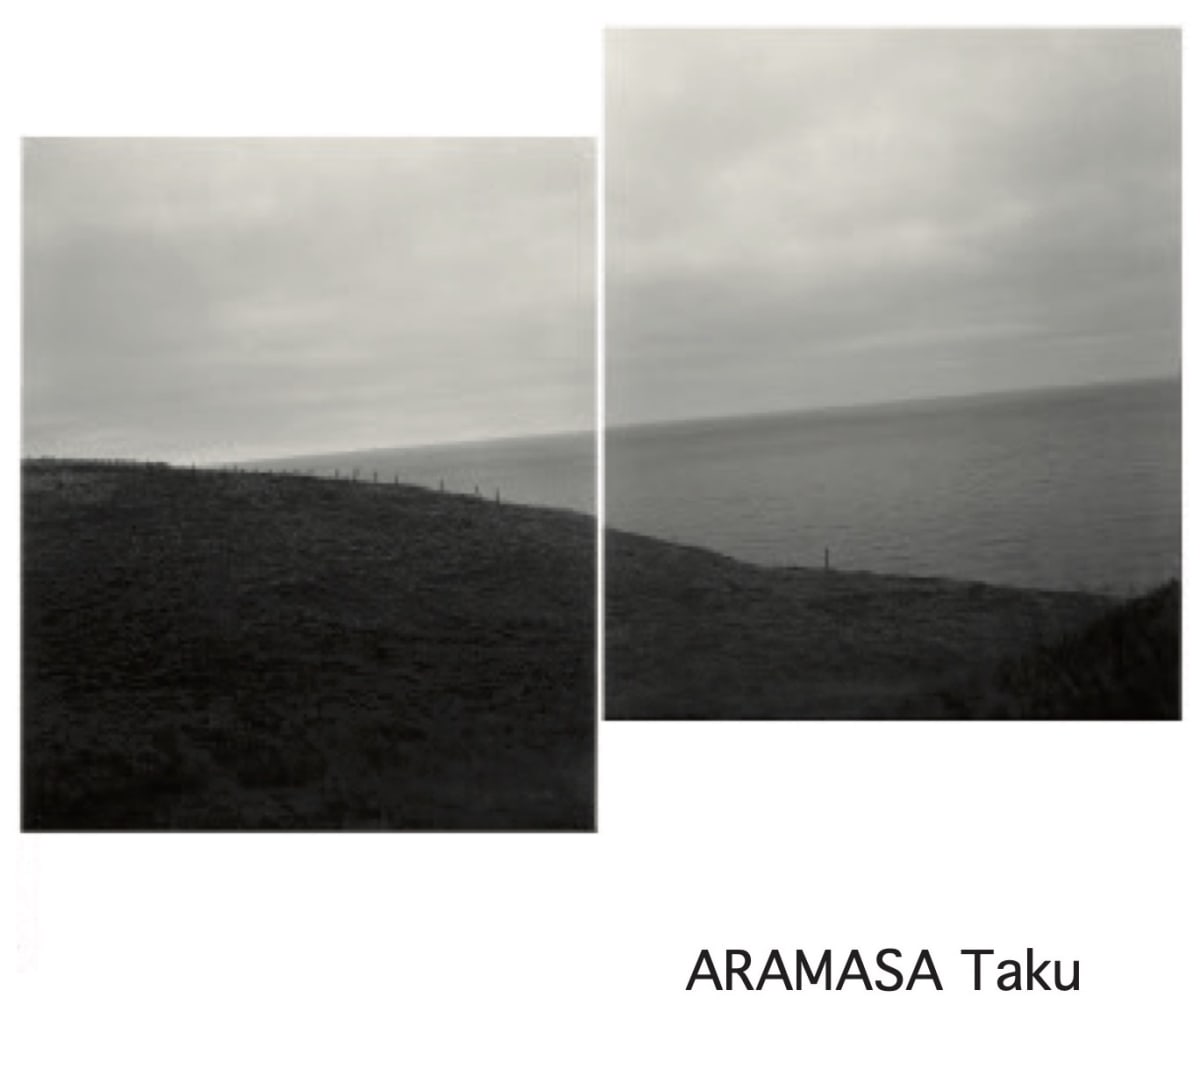 Taku Aramasa